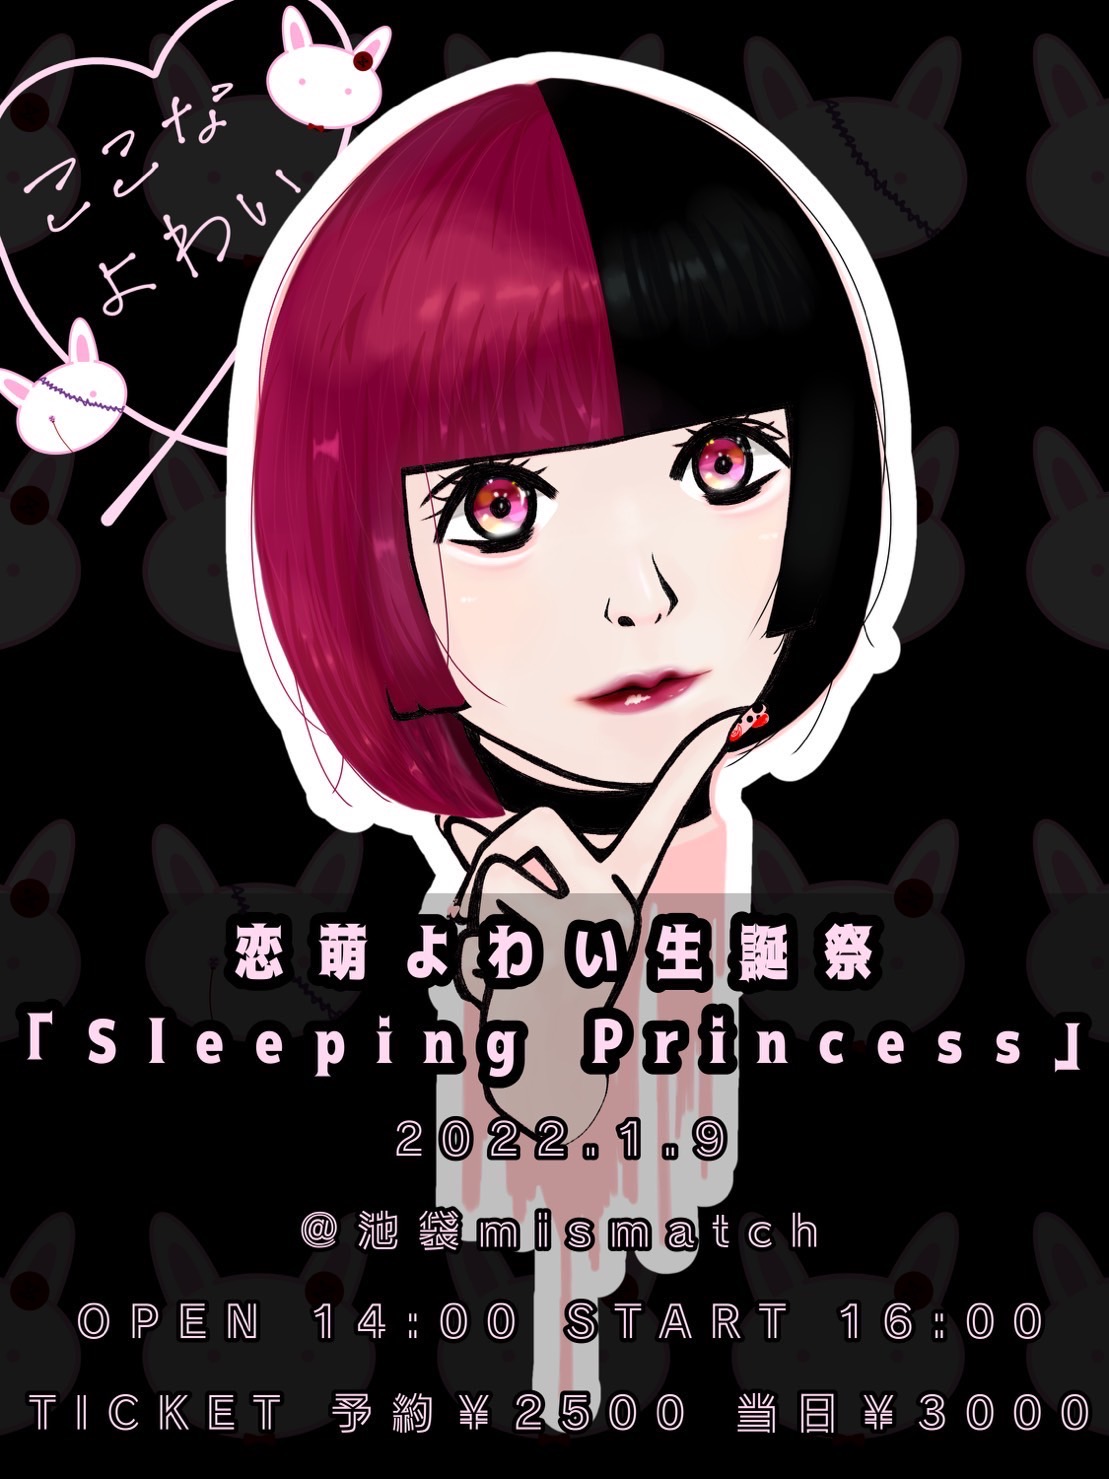 恋萌よわい生誕祭『Sleeping Princess』